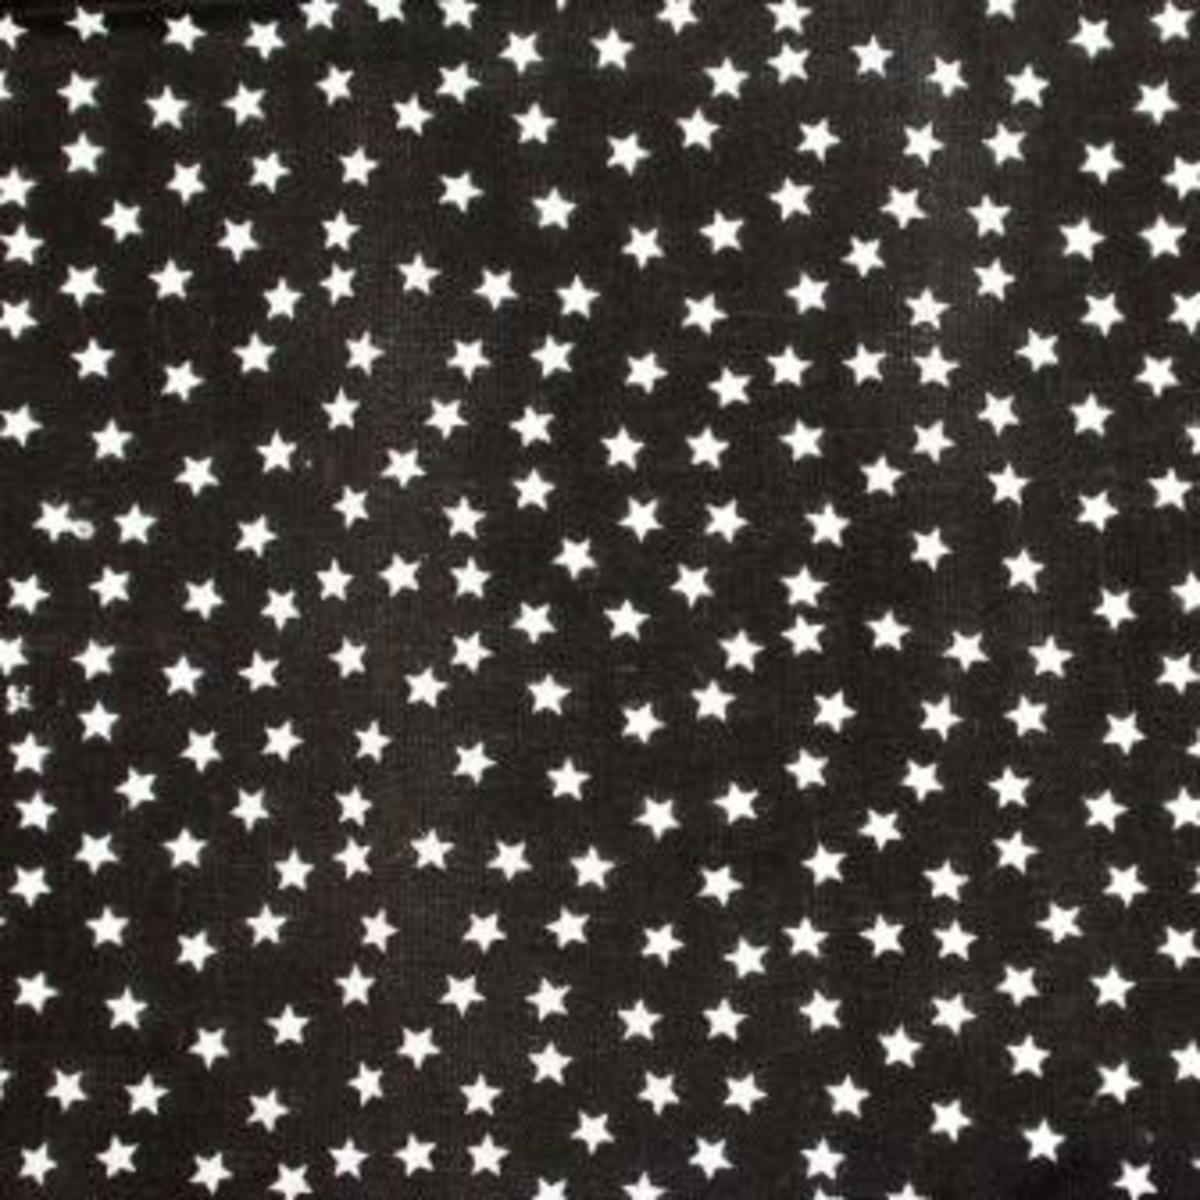 Pièce de coton imprimé étoiles - 55 x 45,5 cm - Blanc et noir